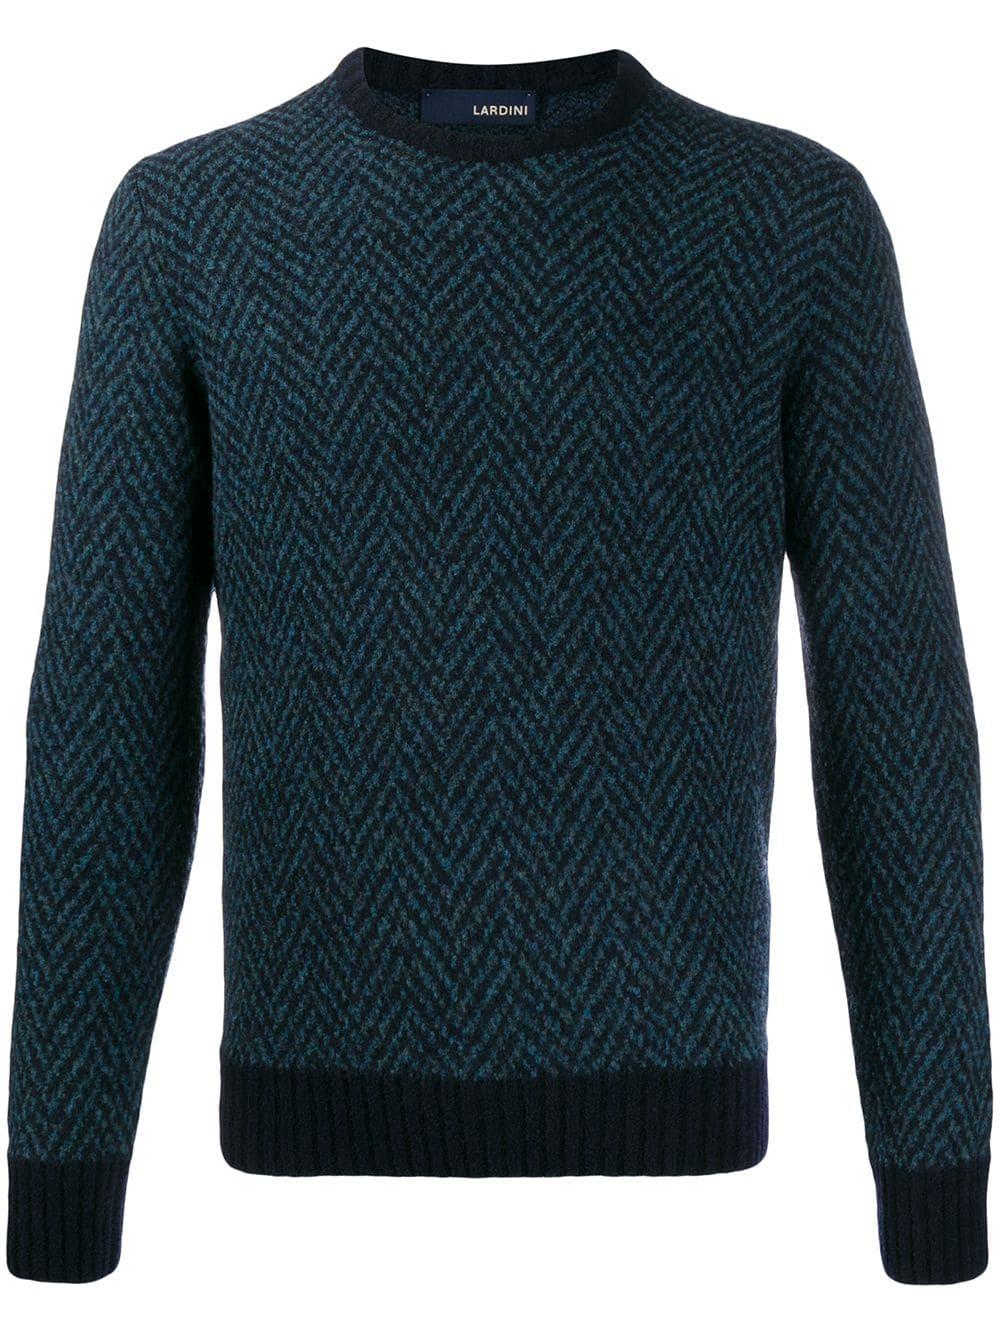 Lardini Wool Herringbone Knit Sweater in Blue for Men - Lyst